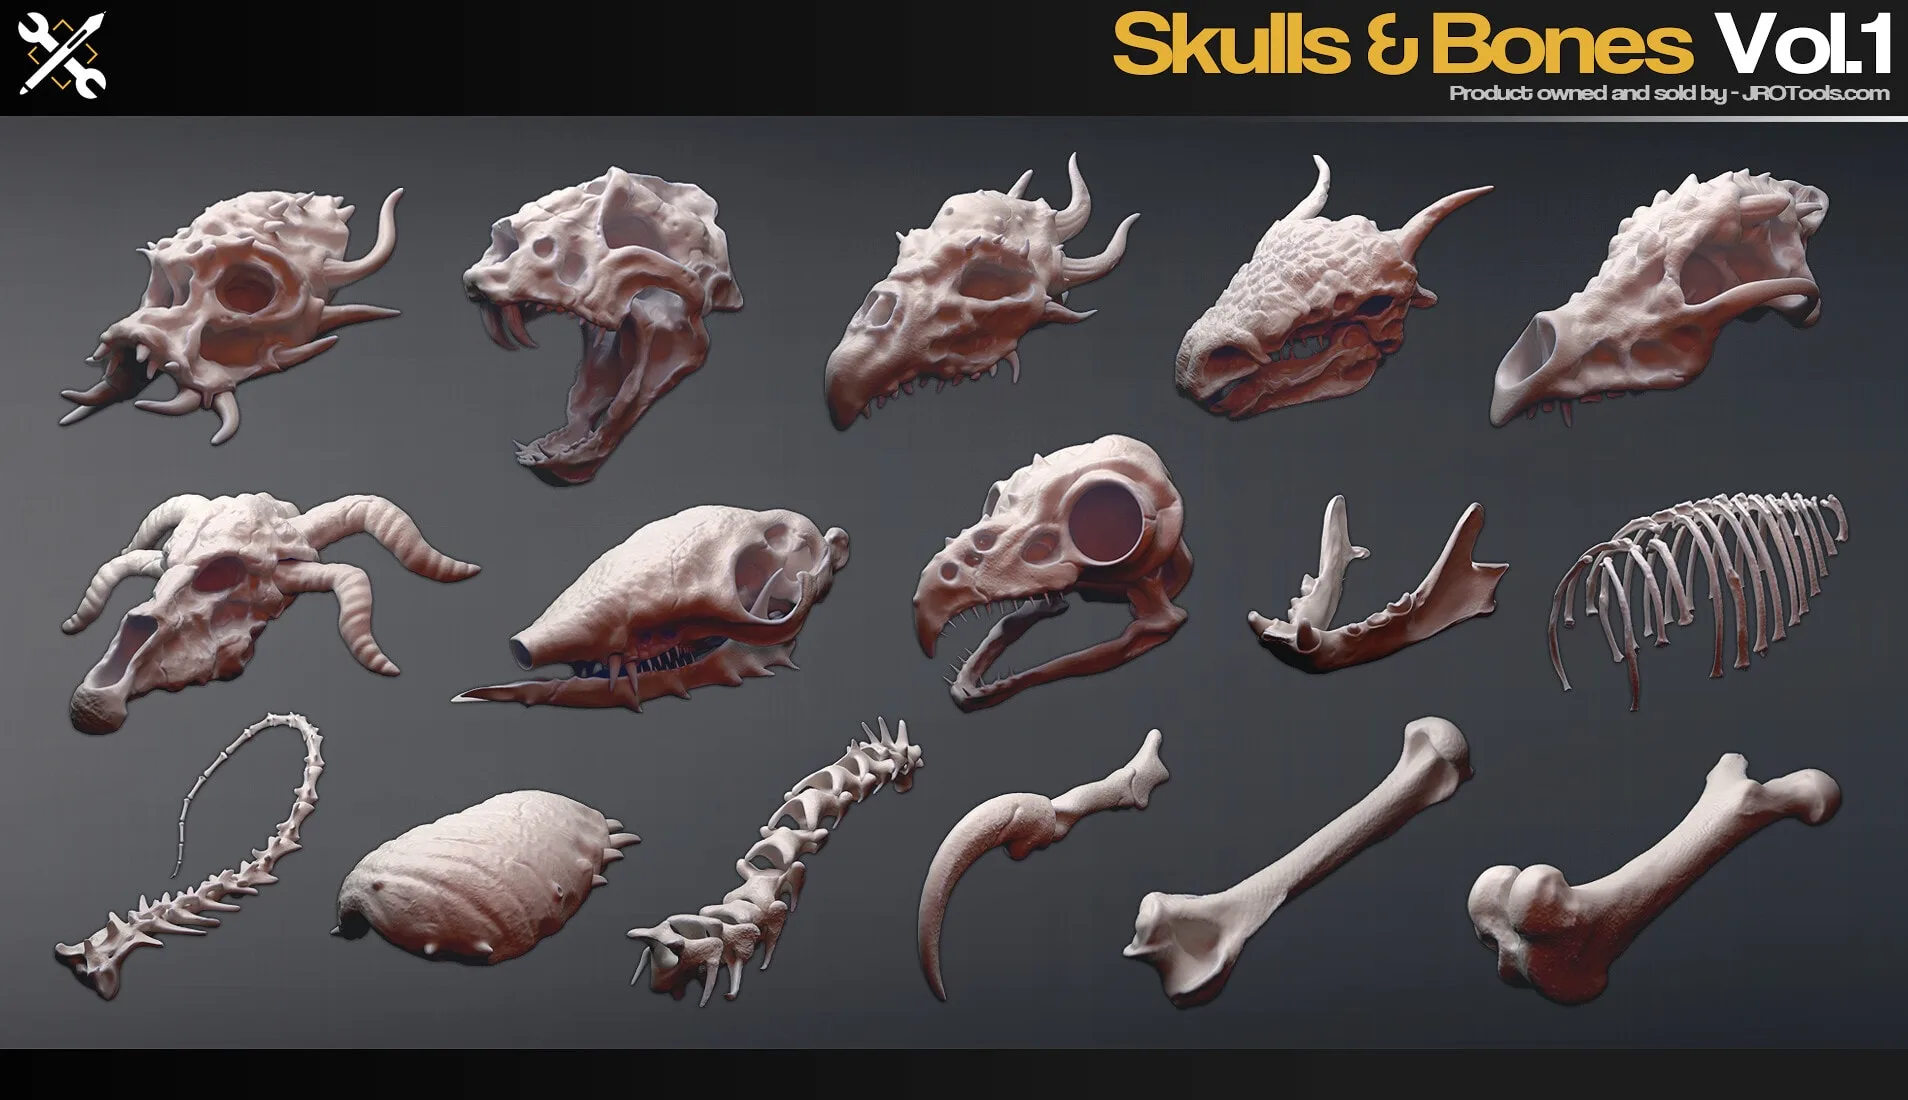 Skulls&Bones Vol.1